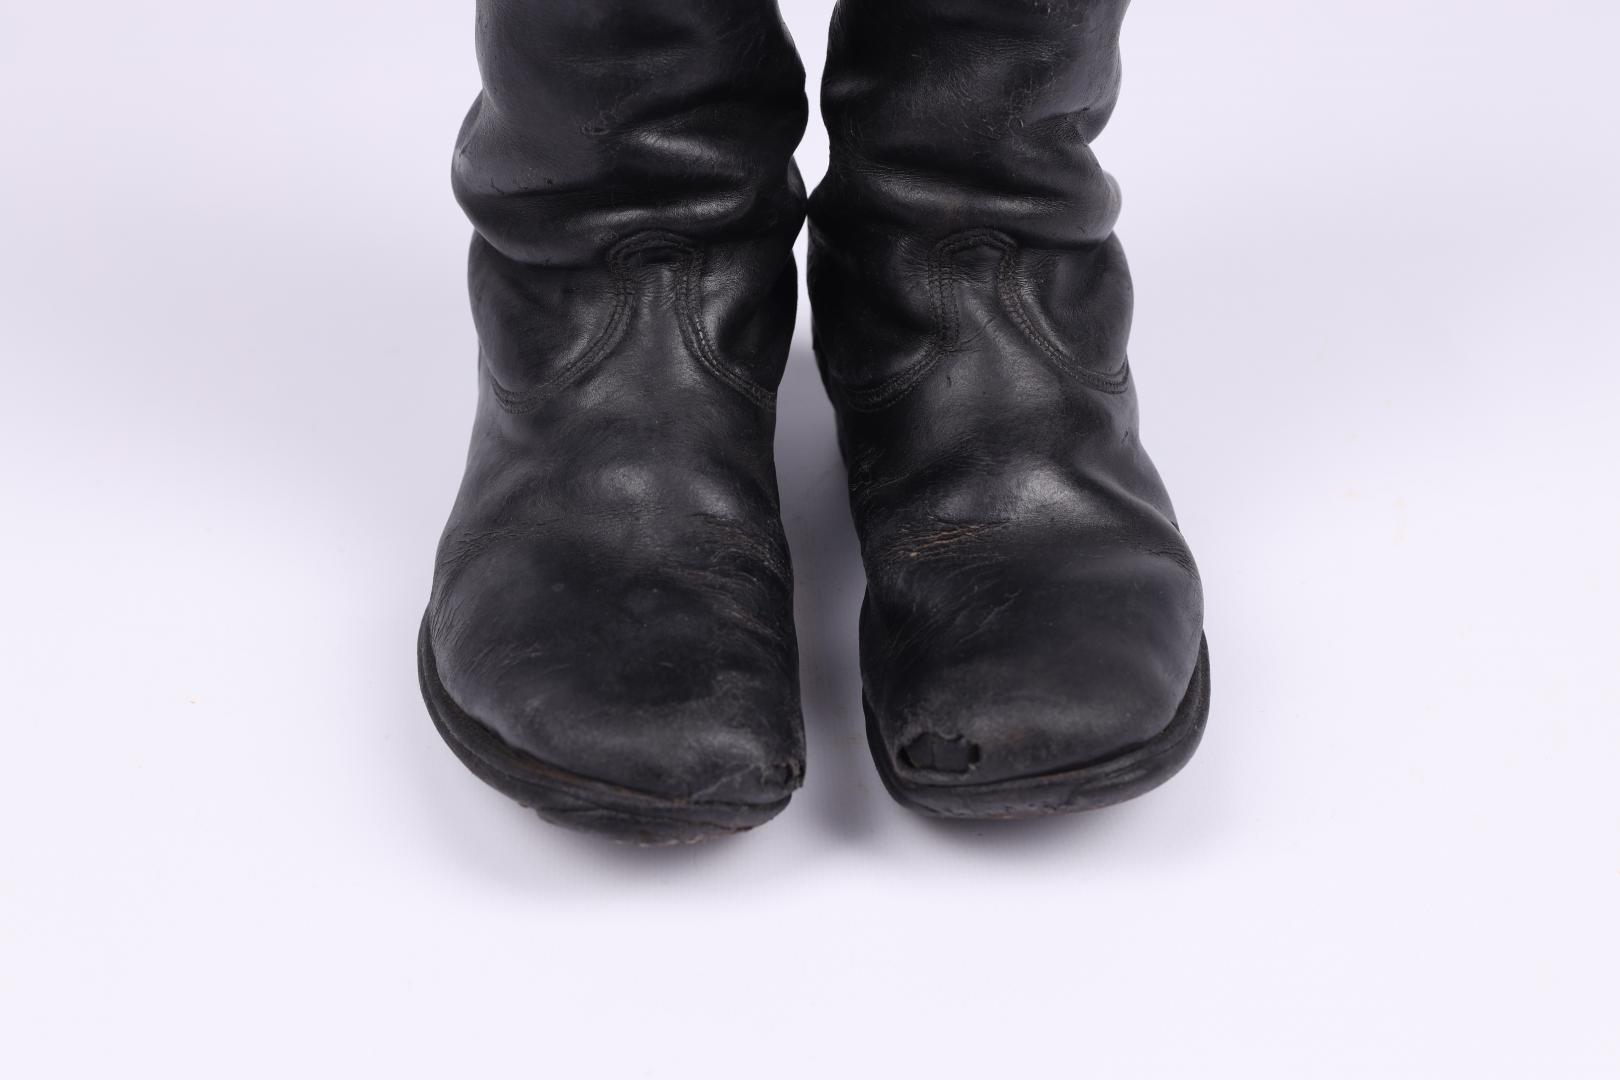 Children's boots